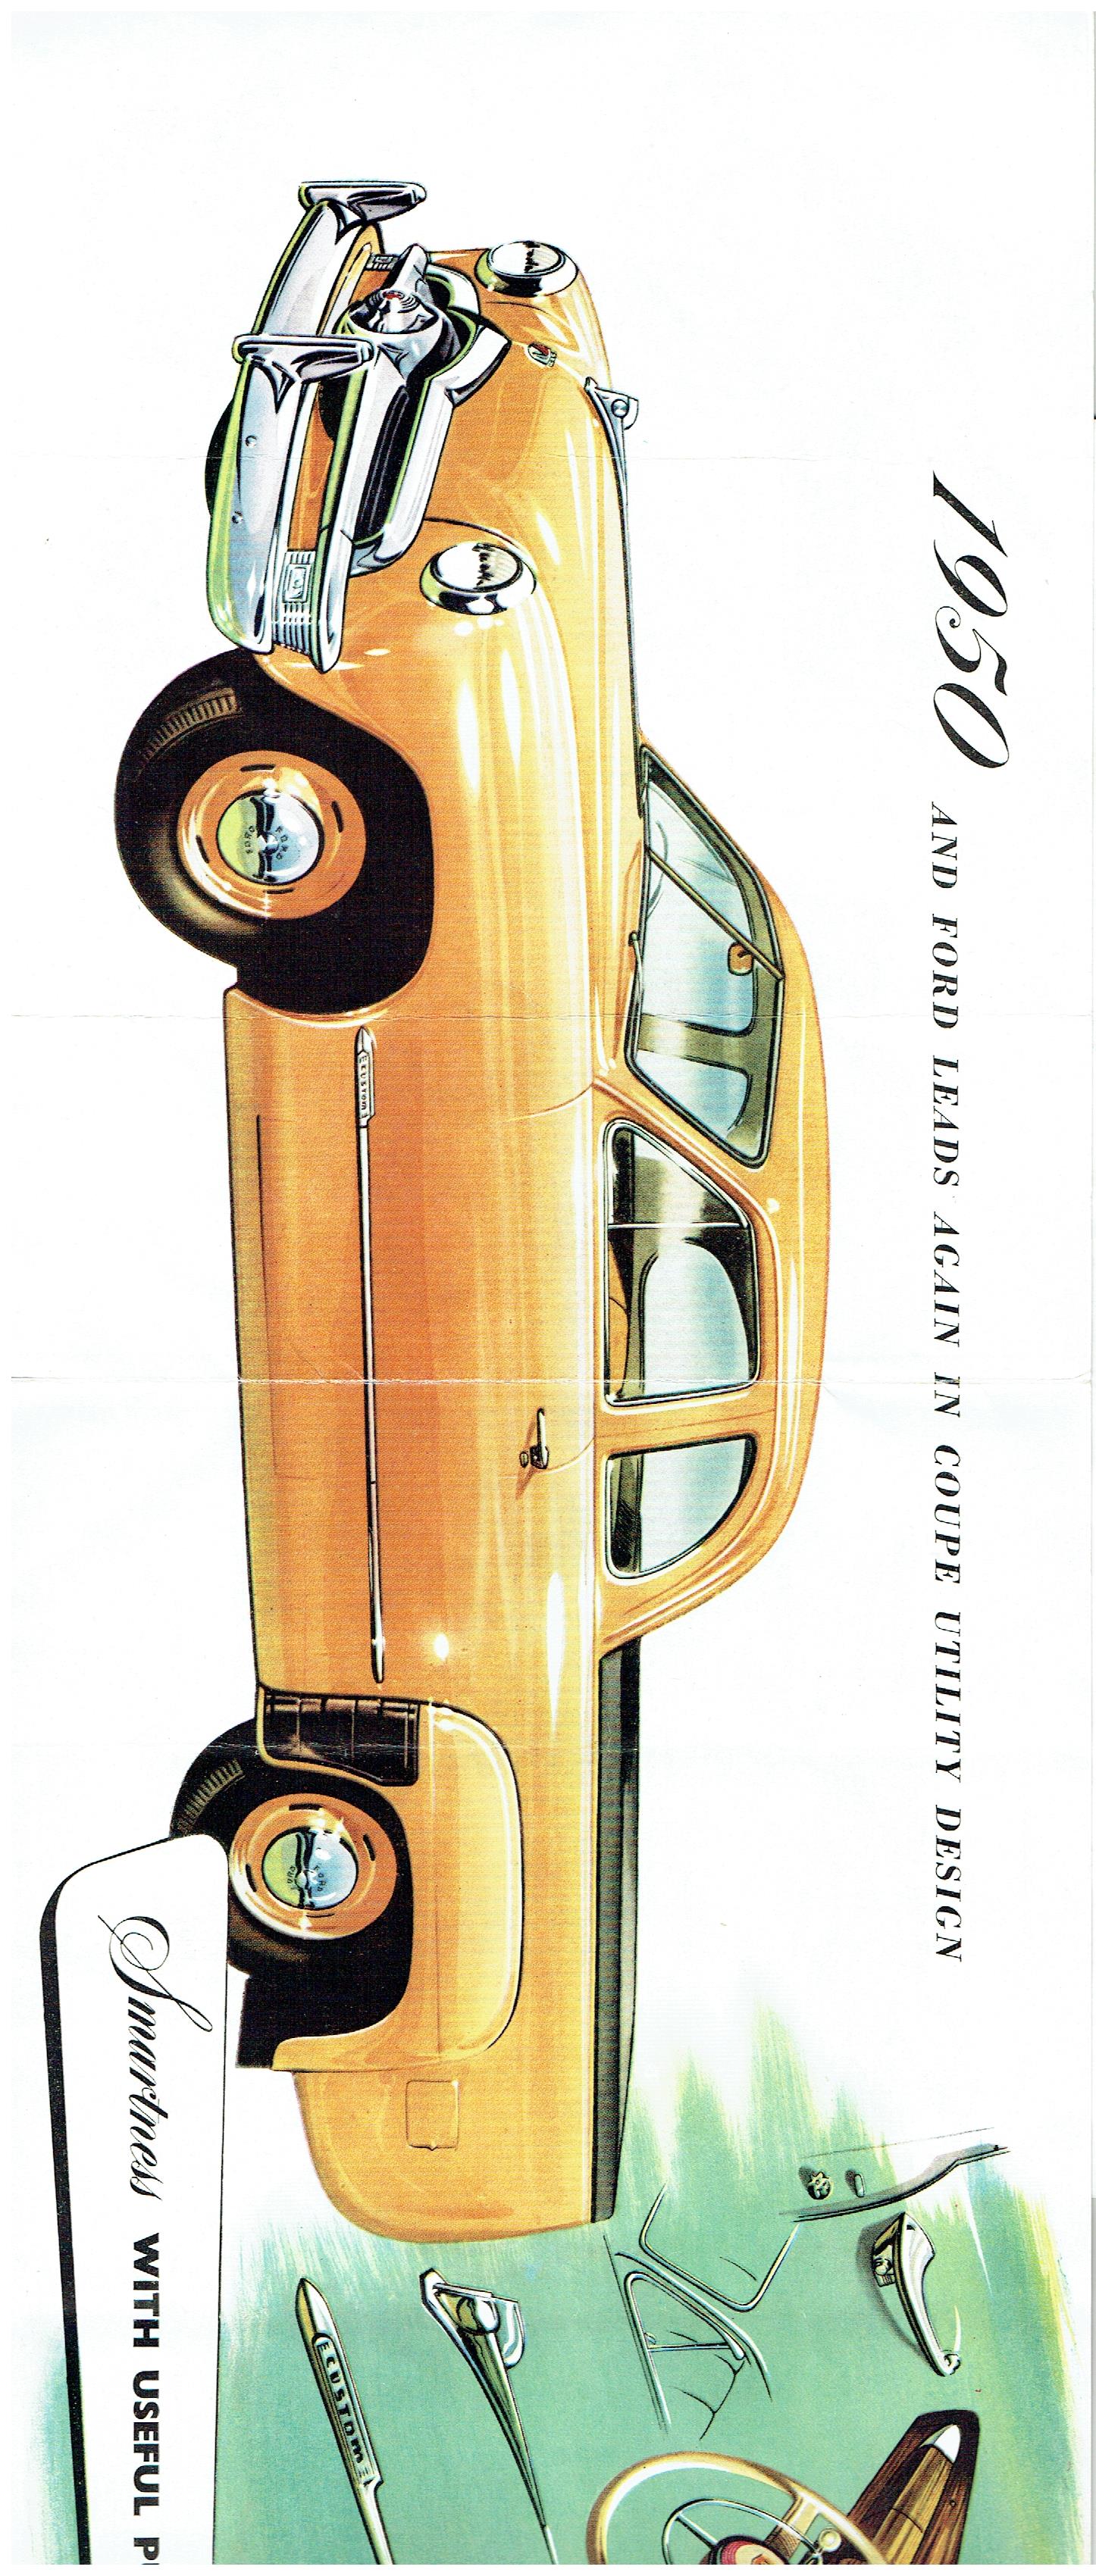 1950 Ford Deluxe Ute (2).jpg-2022-12-7 12.58.55